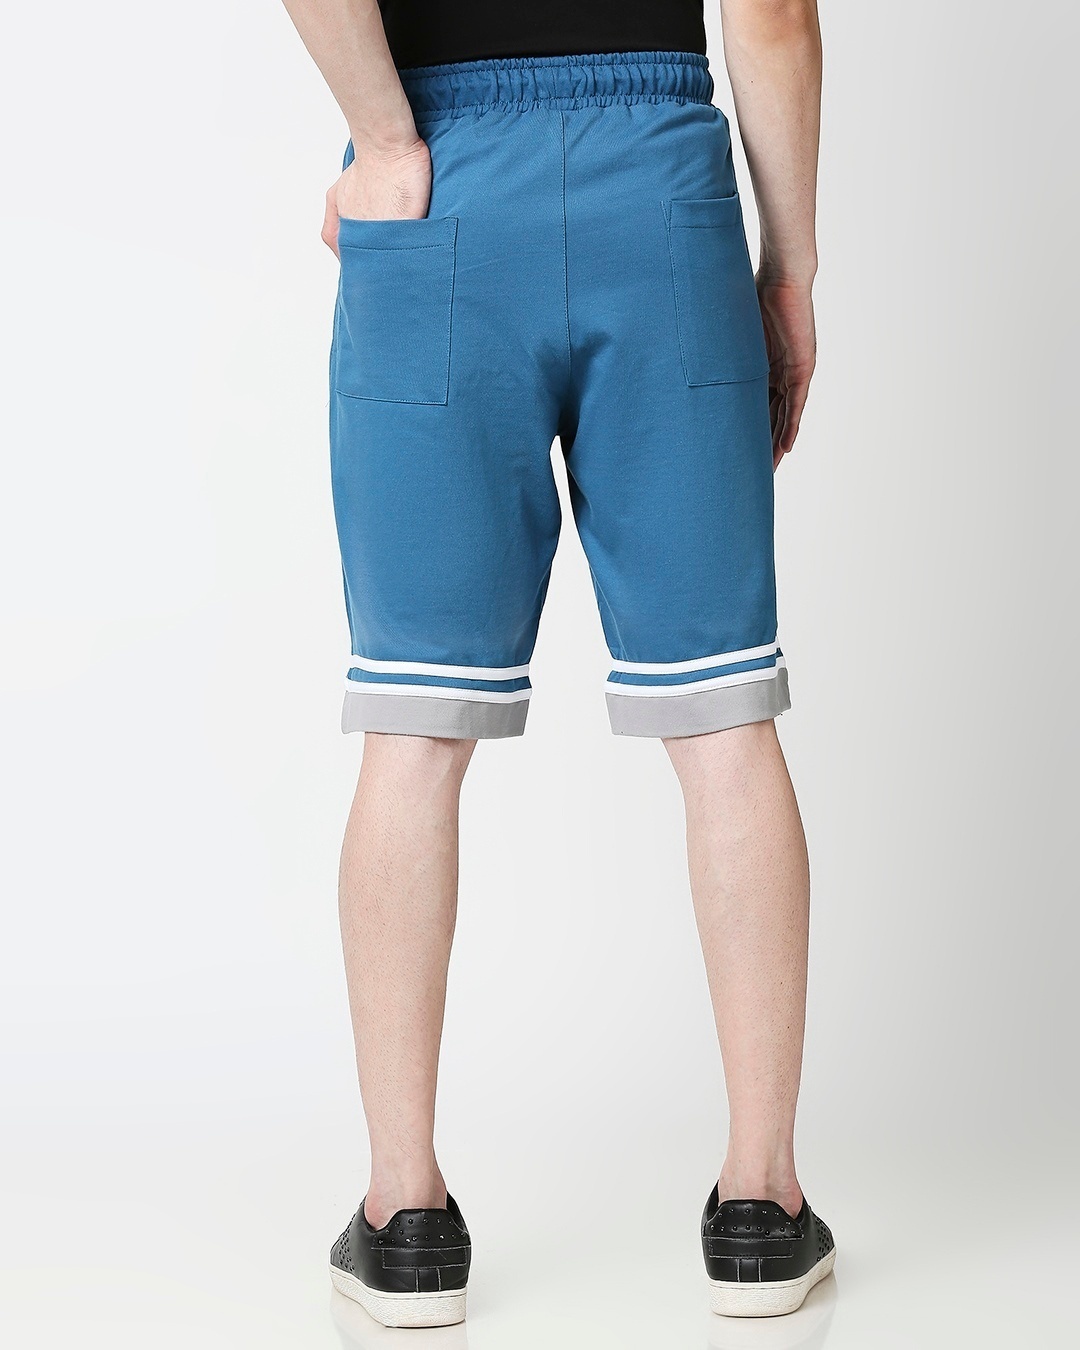 Shop Digital Teal Men's Varsity Shorts-Design